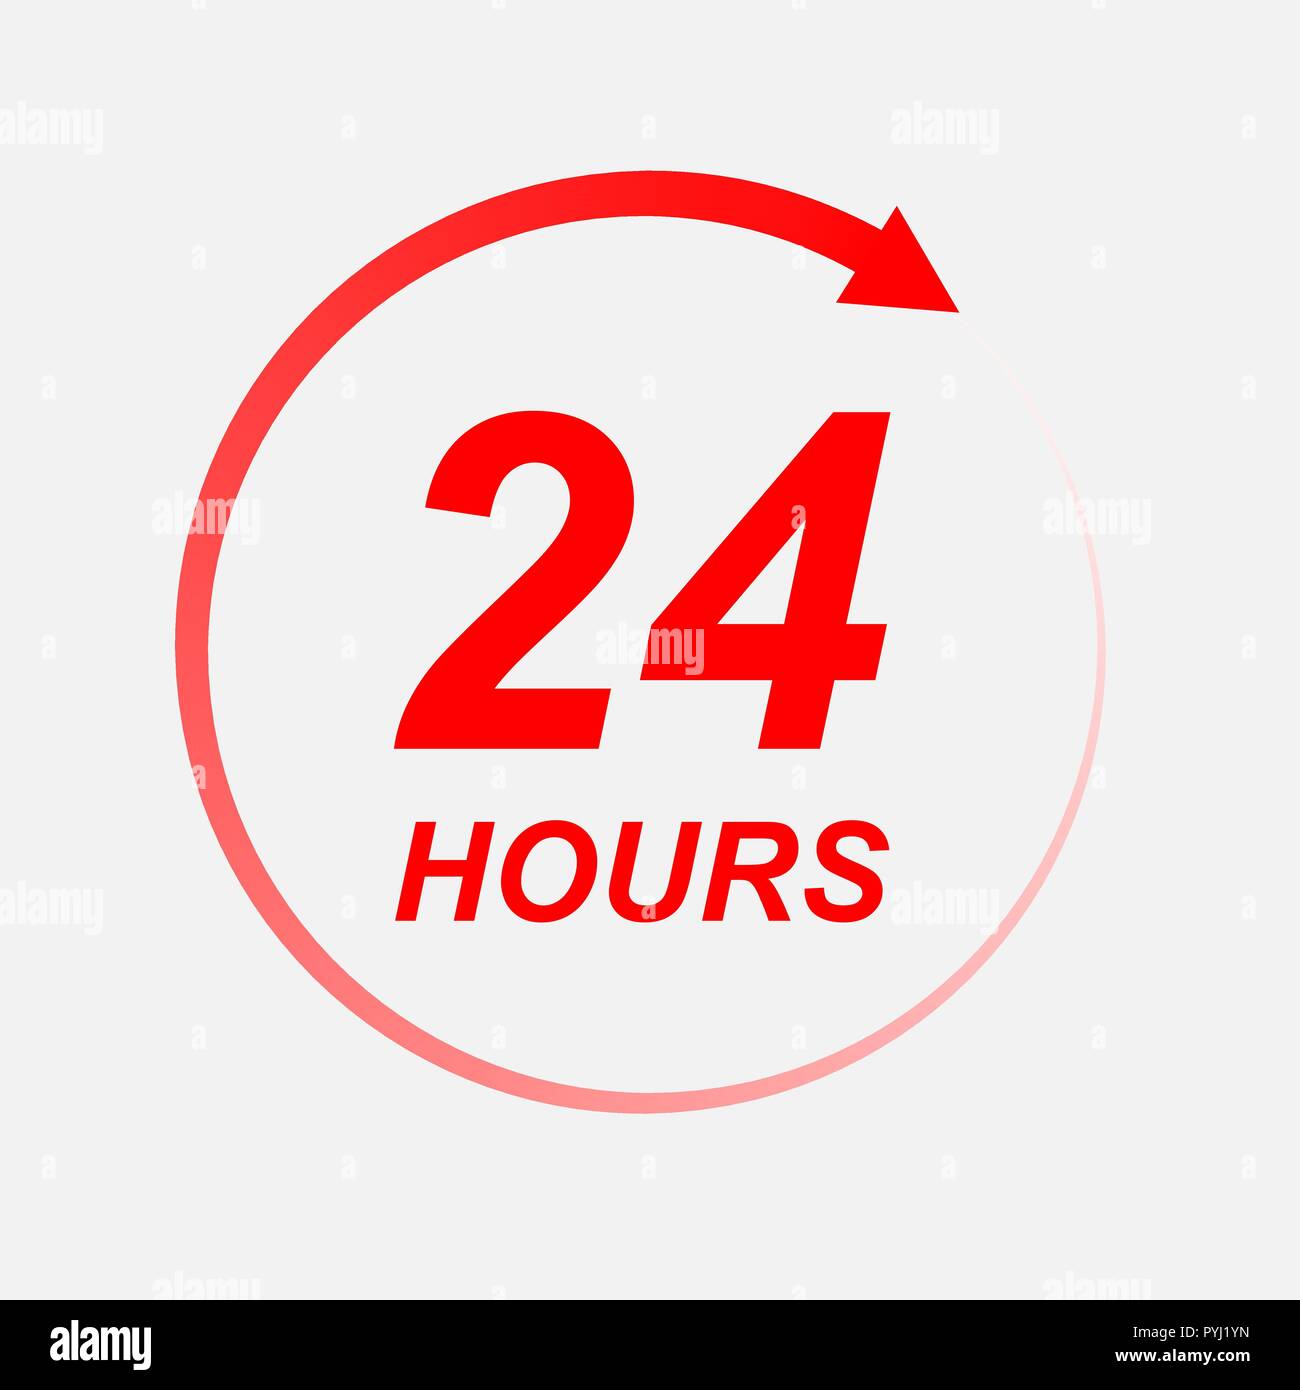 Двадцать 24 часа. Значок 24/7. Знак 24 часа. 24 Часа лого. 24 Hours.